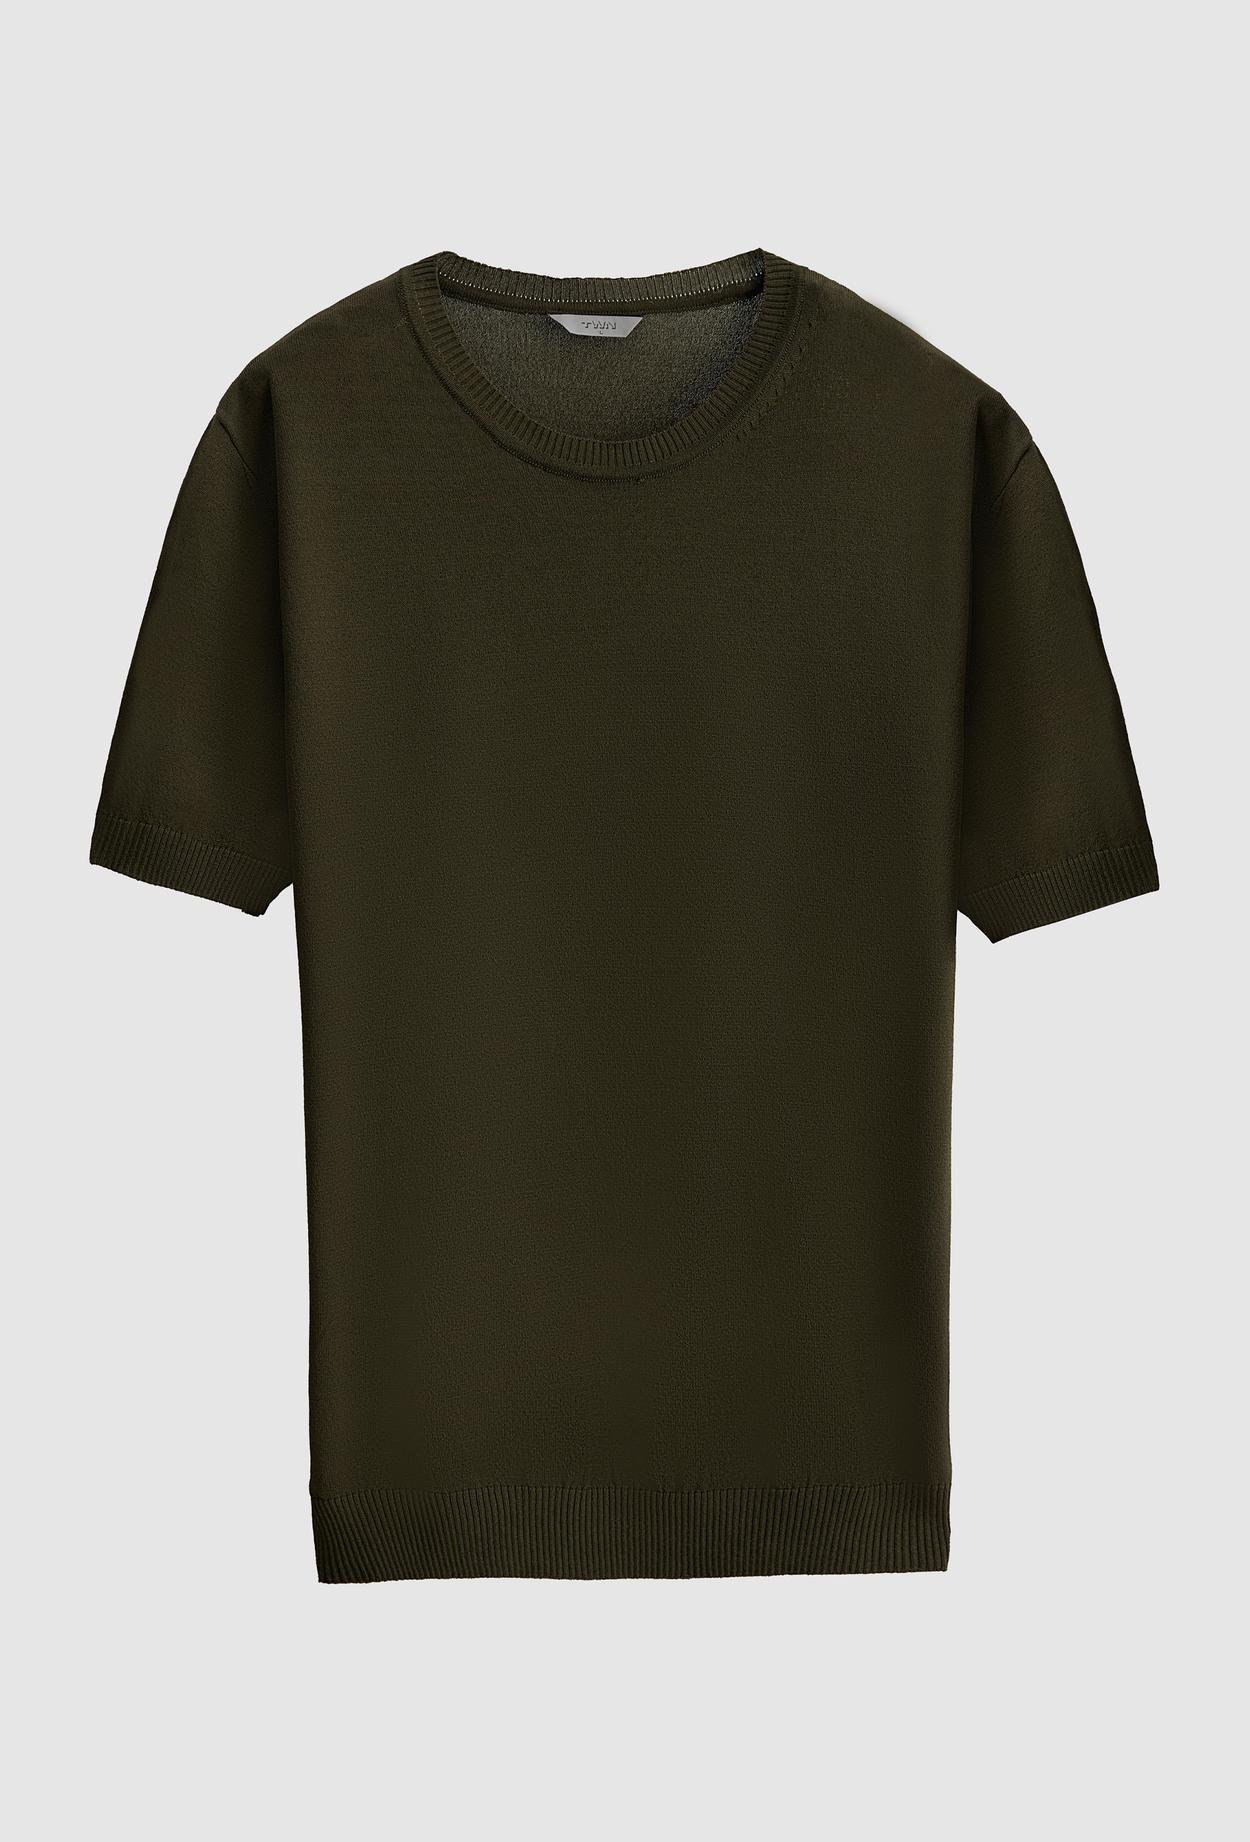 Twn Slim Fit Haki Düz Örgü Rayon Örme T-Shirt